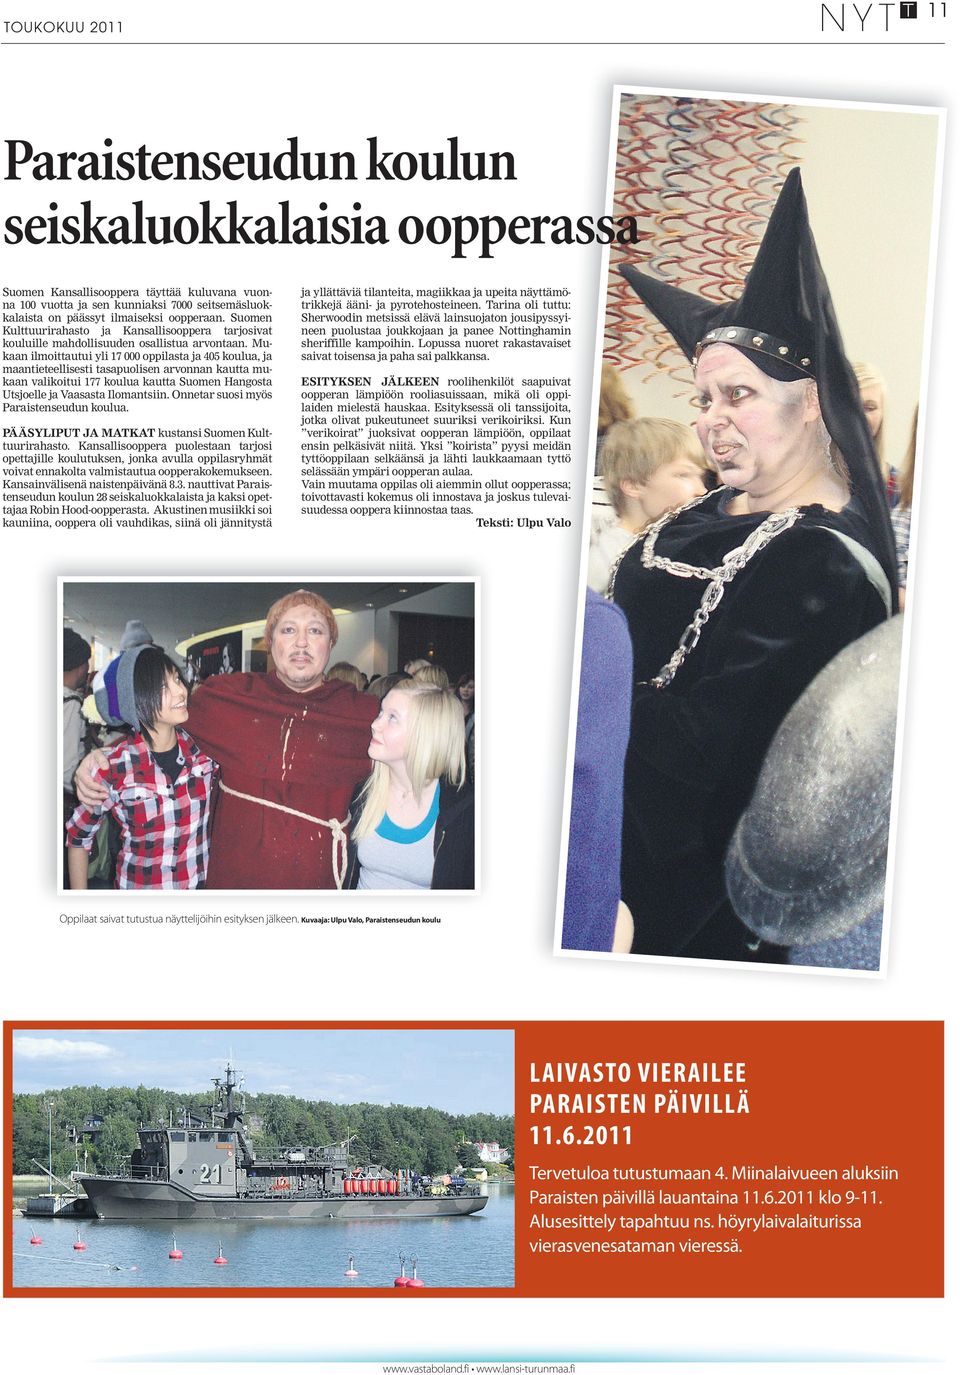 Mukaan ilmoittautui yli 17 000 oppilasta ja 405 koulua, ja maantieteellisesti tasapuolisen arvonnan kautta mukaan valikoitui 177 koulua kautta Suomen Hangosta Utsjoelle ja Vaasasta Ilomantsiin.